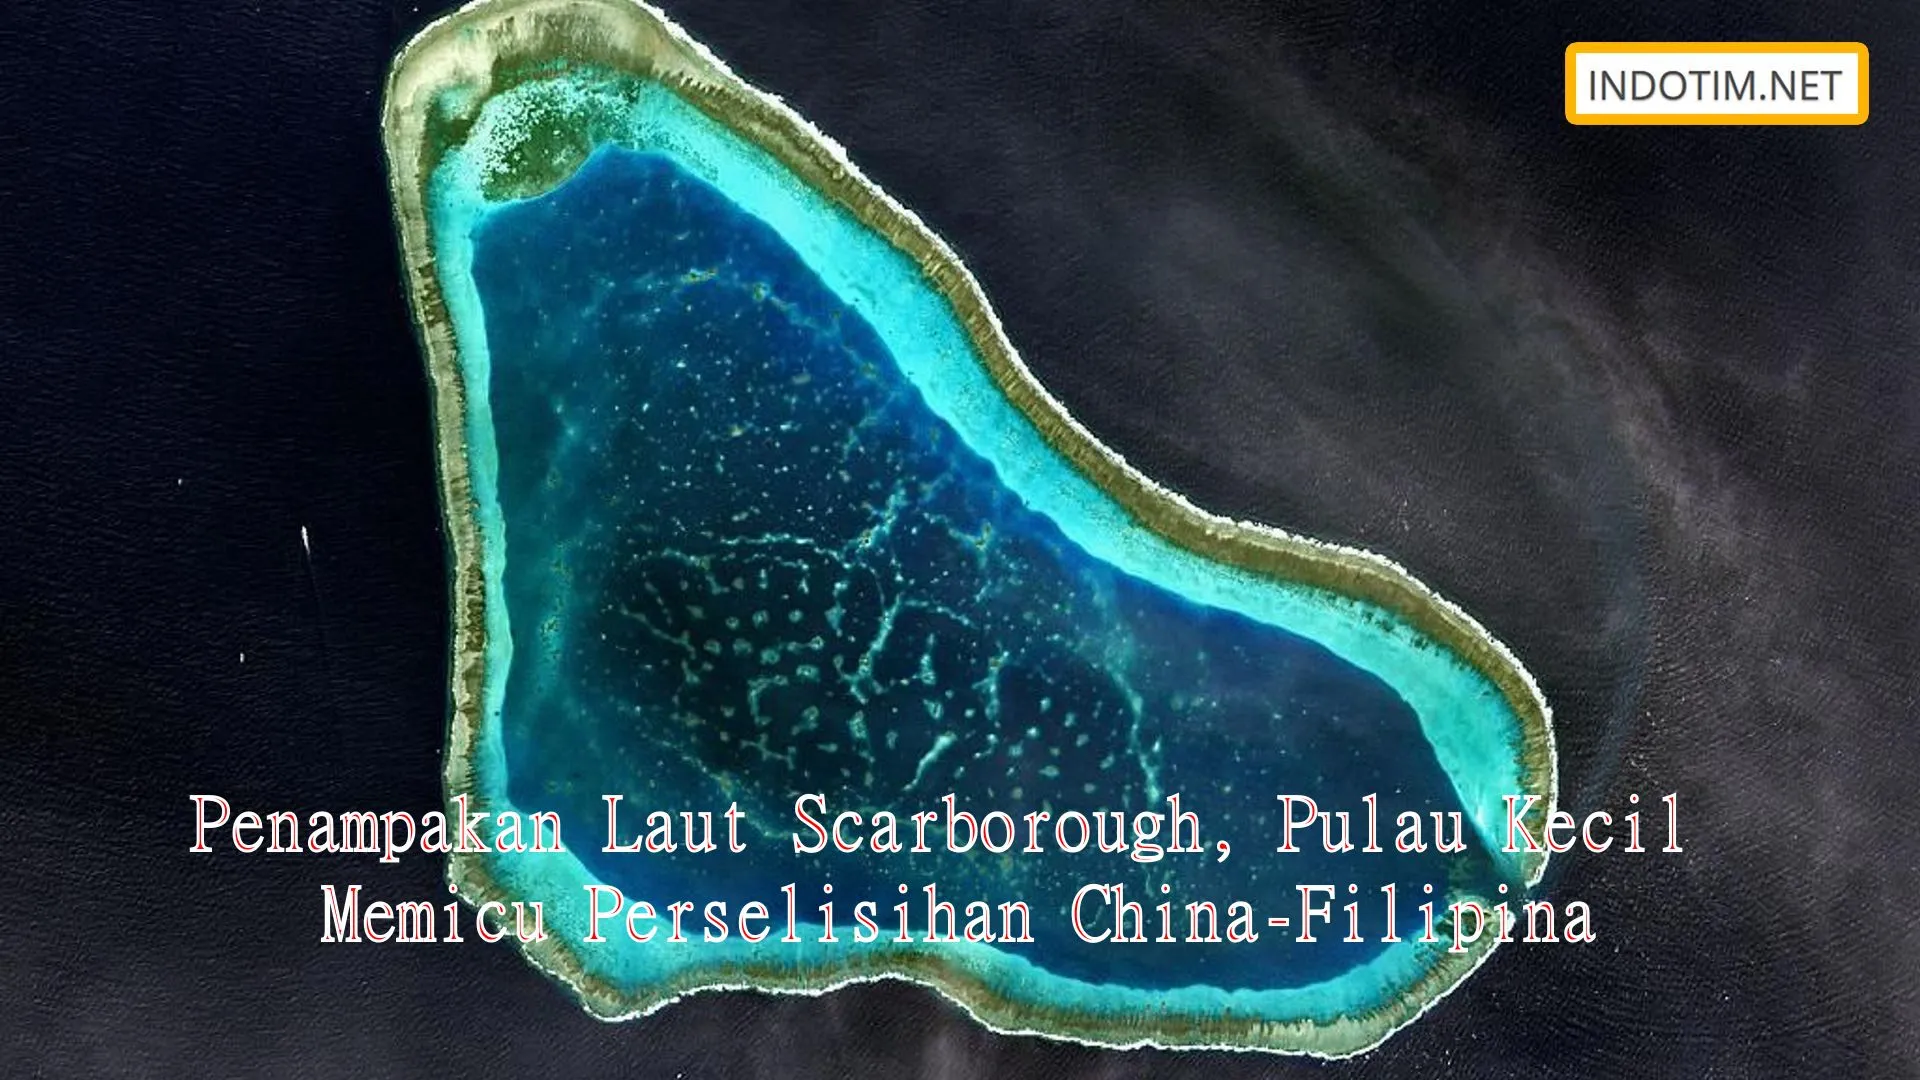 Penampakan Laut Scarborough, Pulau Kecil Memicu Perselisihan China-Filipina